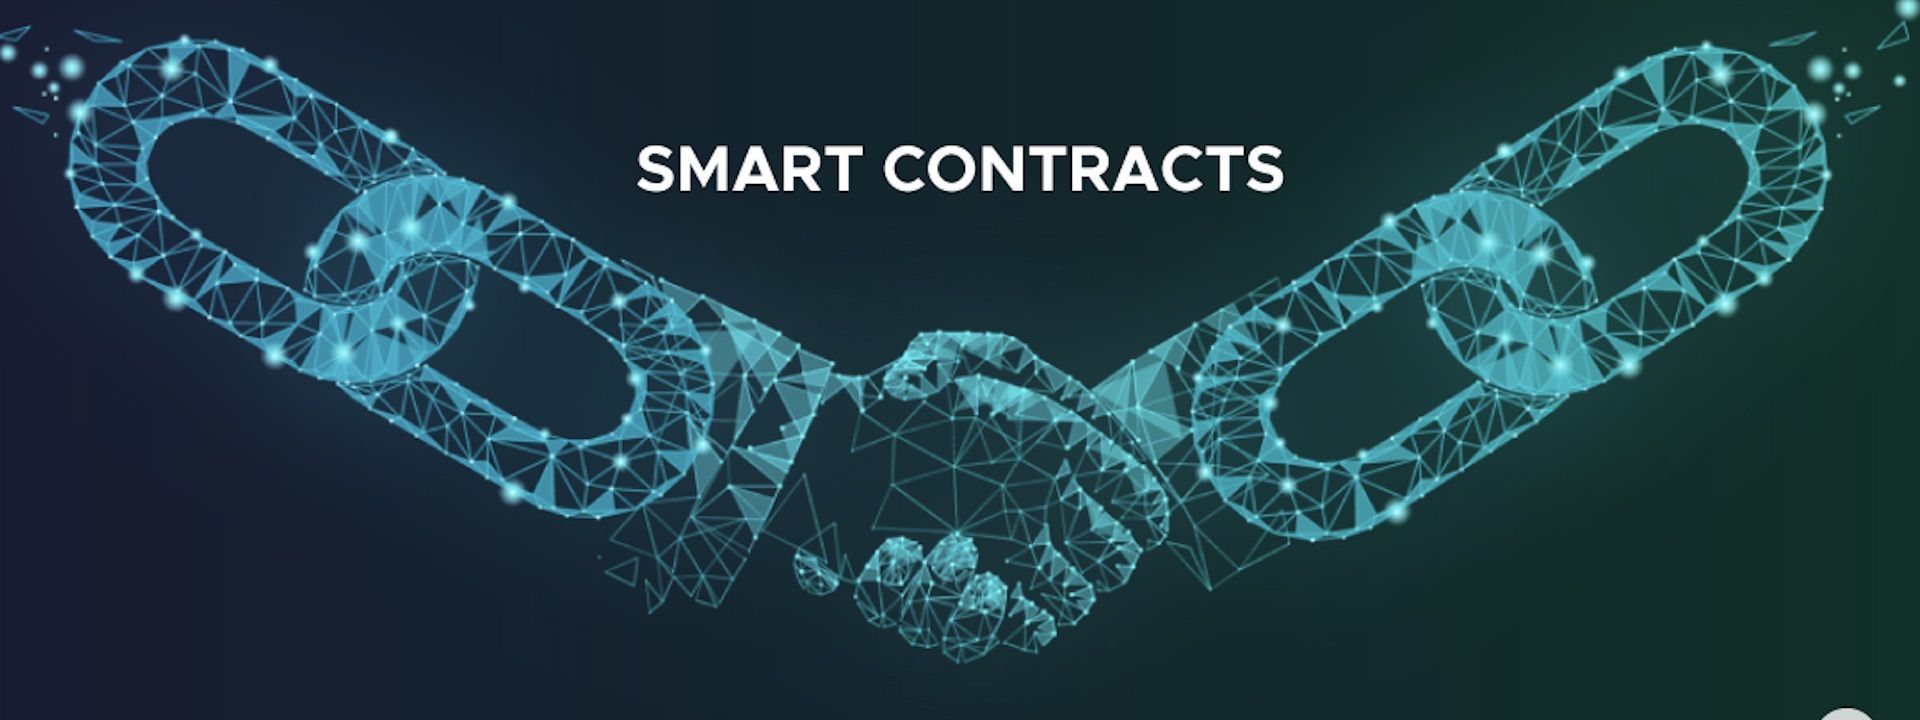 [Lớp học cryptocurrency] Bài 21: Hợp đồng thông minh (Smart Contract) là gì?